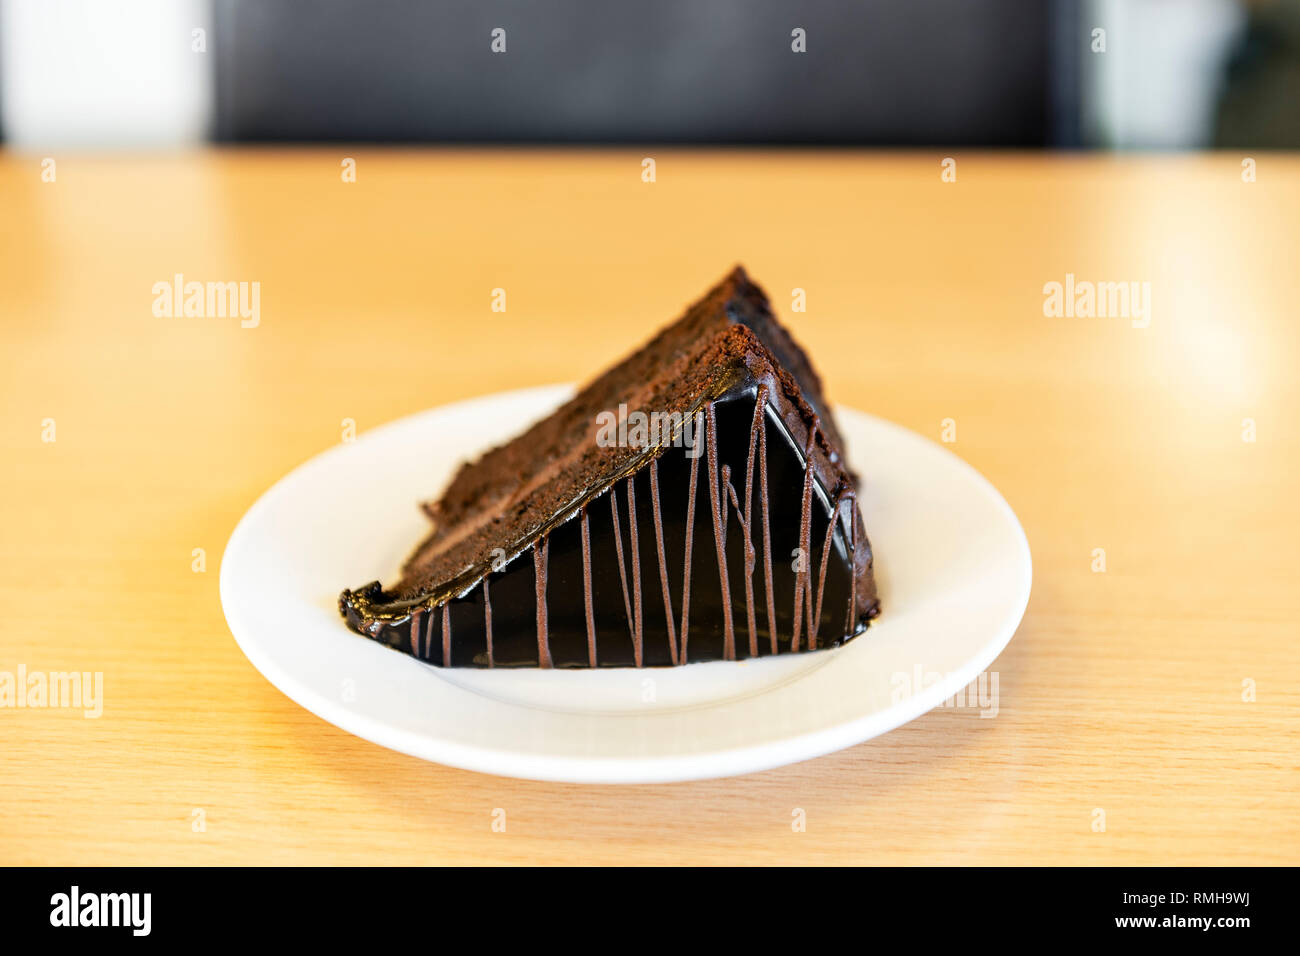 Ein Stück Schokolade Kuchen mit Puderzucker auf einem weißen Teller auf einem Büro Schreibtisch, Großbritannien serviert. Stockfoto